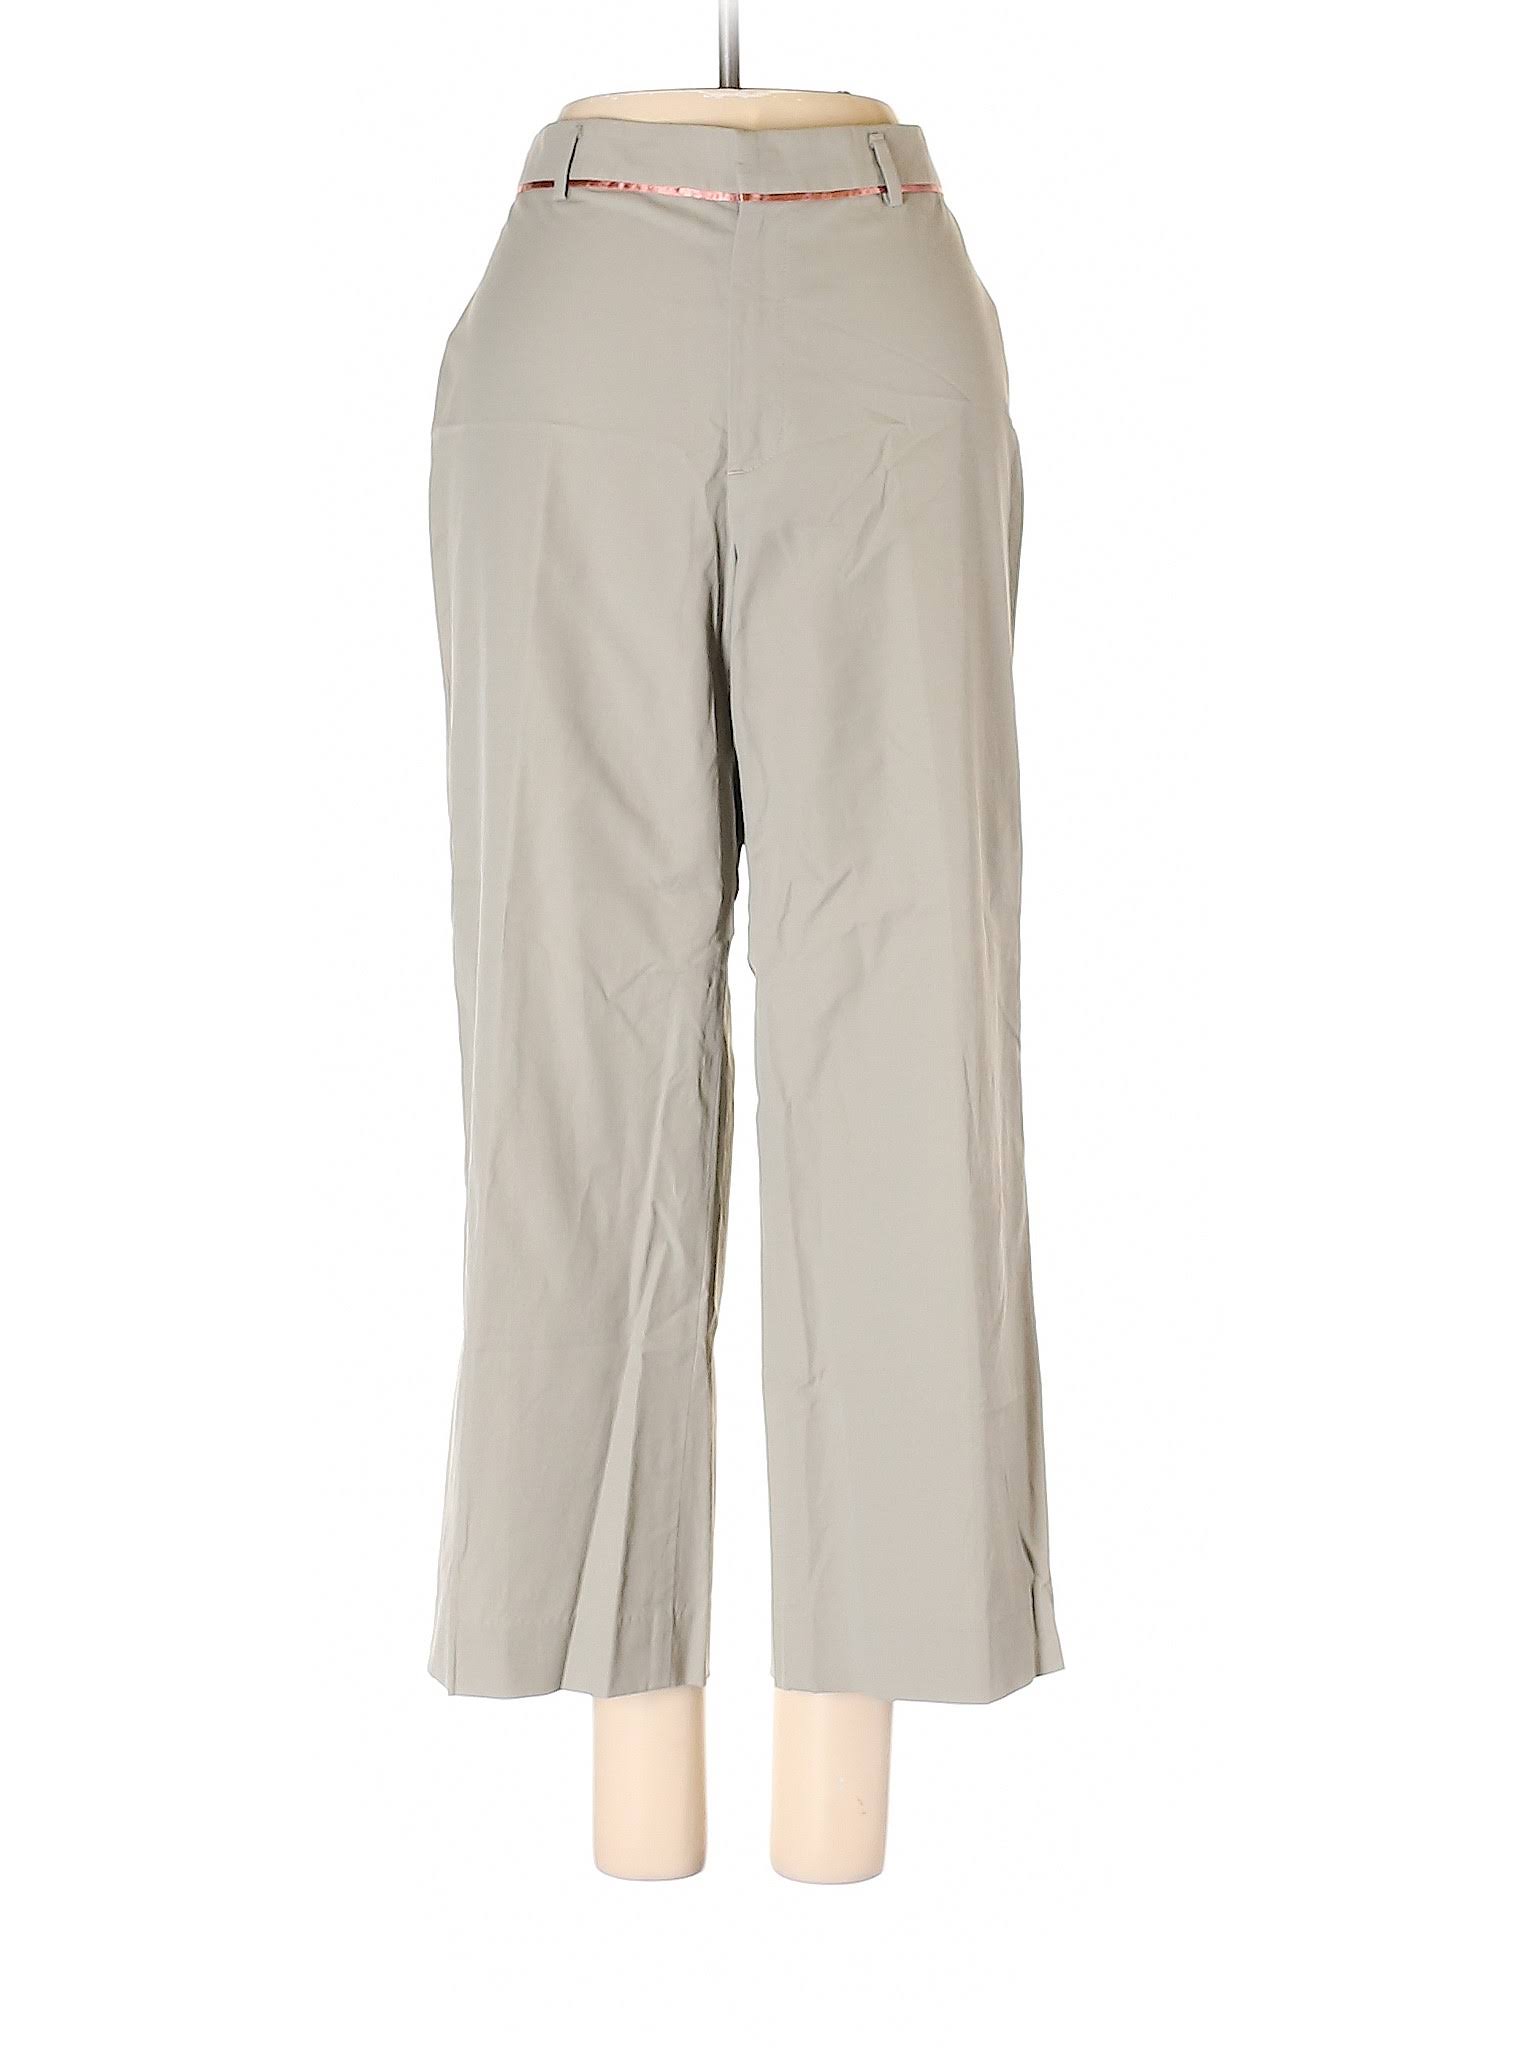 Banana Republic Dress Pants Size 4: Tan Women's Bottoms - 47400061